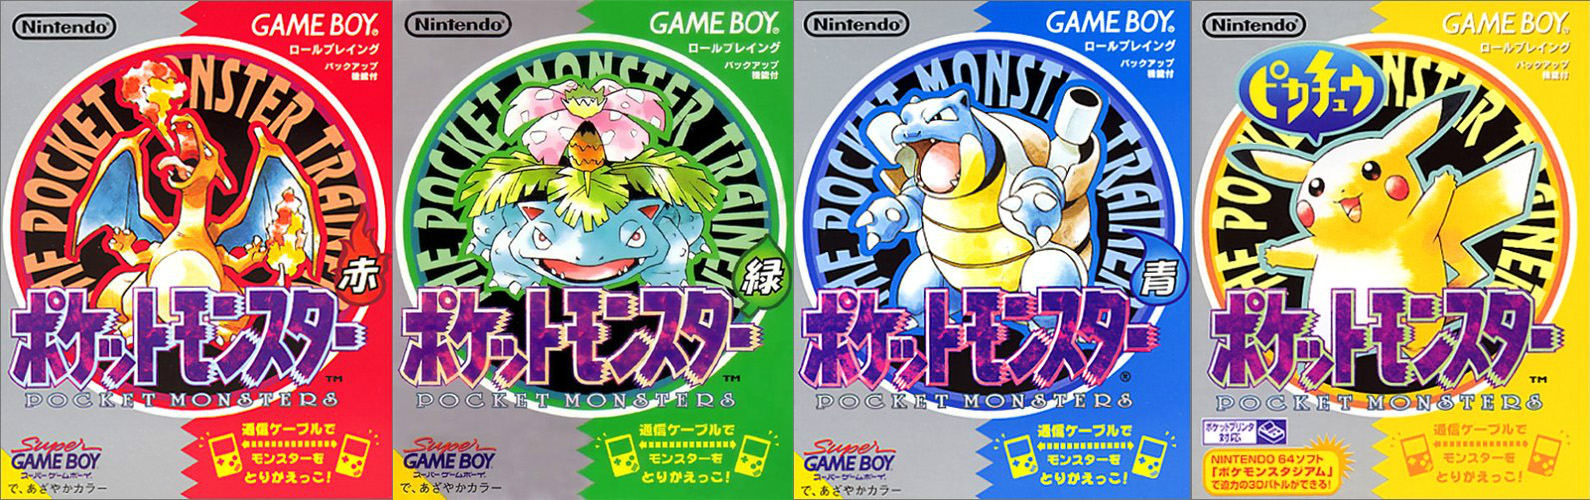 Jaquettes japonaises des jeux Pokémon 1G